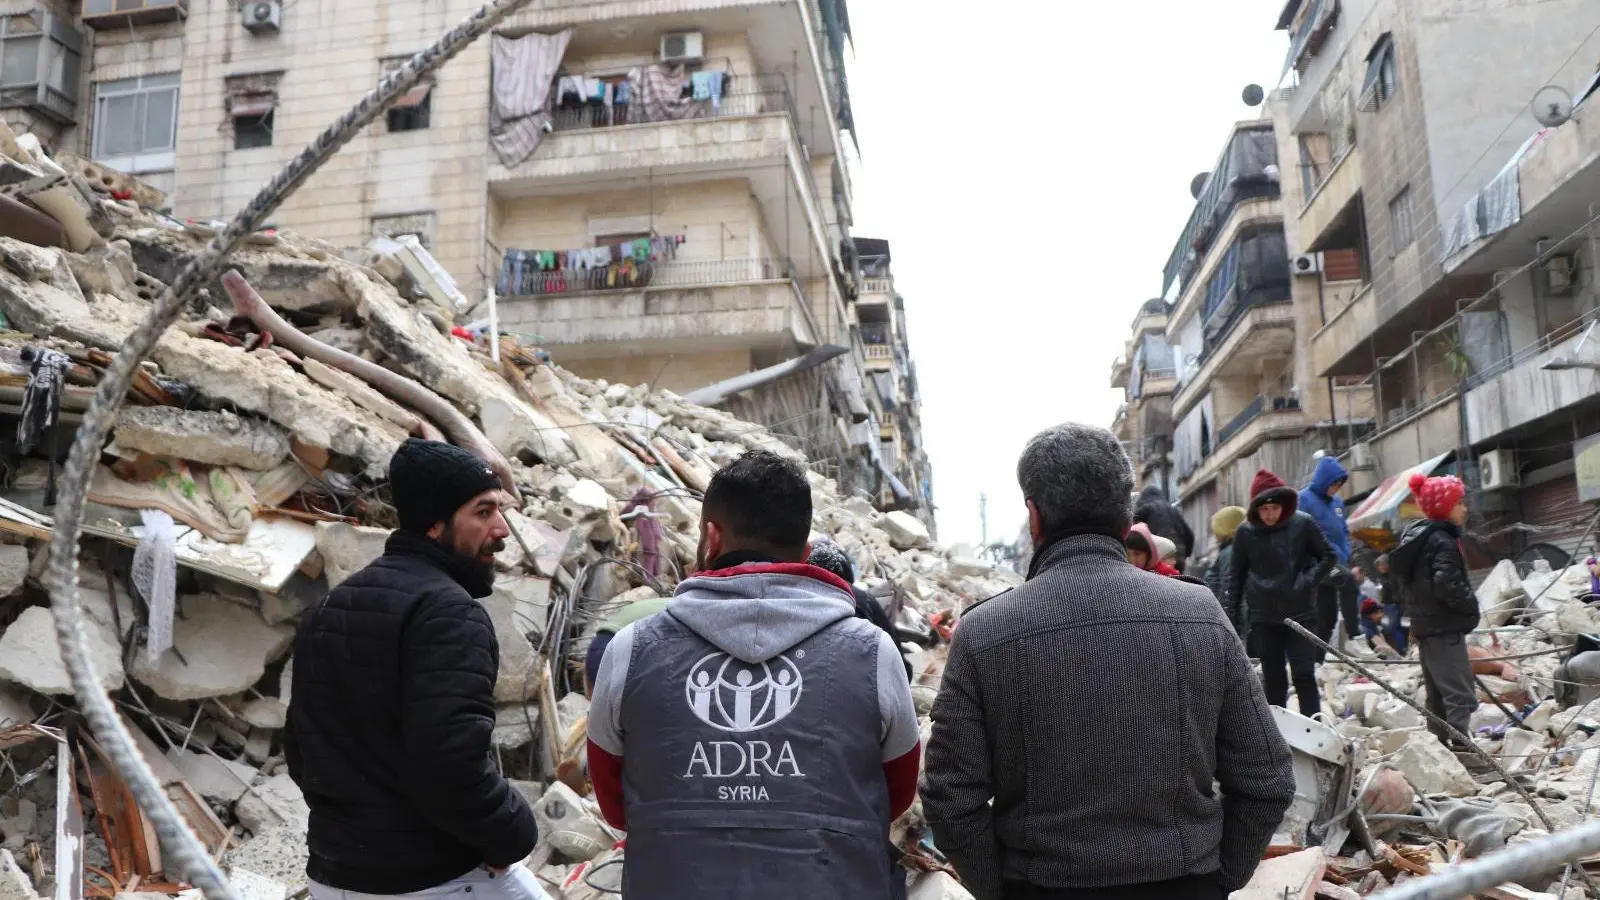 Die Aktion Deutschland Hilft – ein Bündnis von mehr als 20 Hilfsorganisationen – ist seit Tag 1 der Katastrophe im Einsatz für die Menschen, die von den schweren Erdbeben in de Türkei und in Syrien betroffen sind. <br> (Foto: ADRA Syrien)